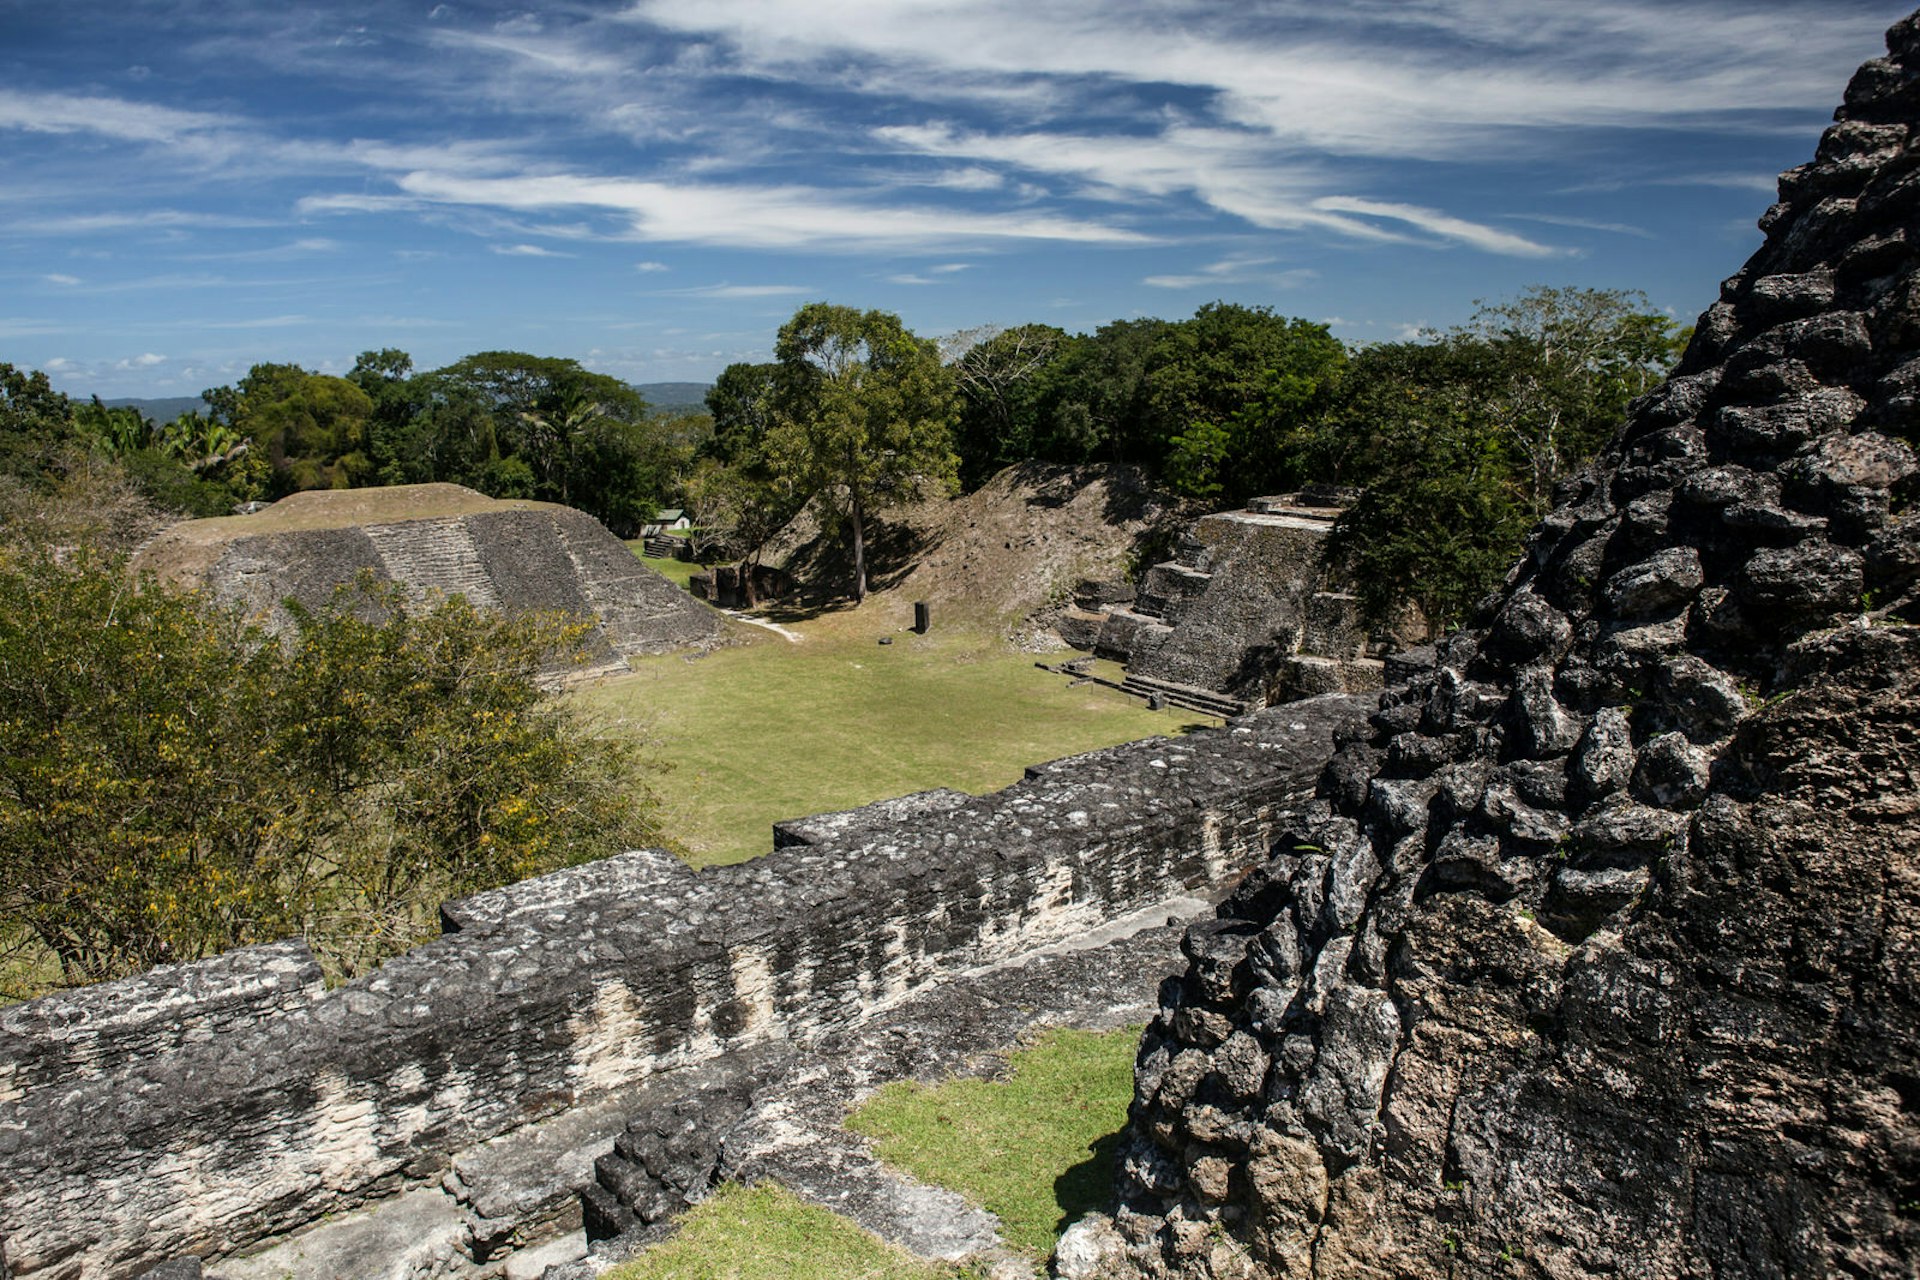 The pyramids of Xunantunich, Belize © Ethan Daniels / Shutterstock